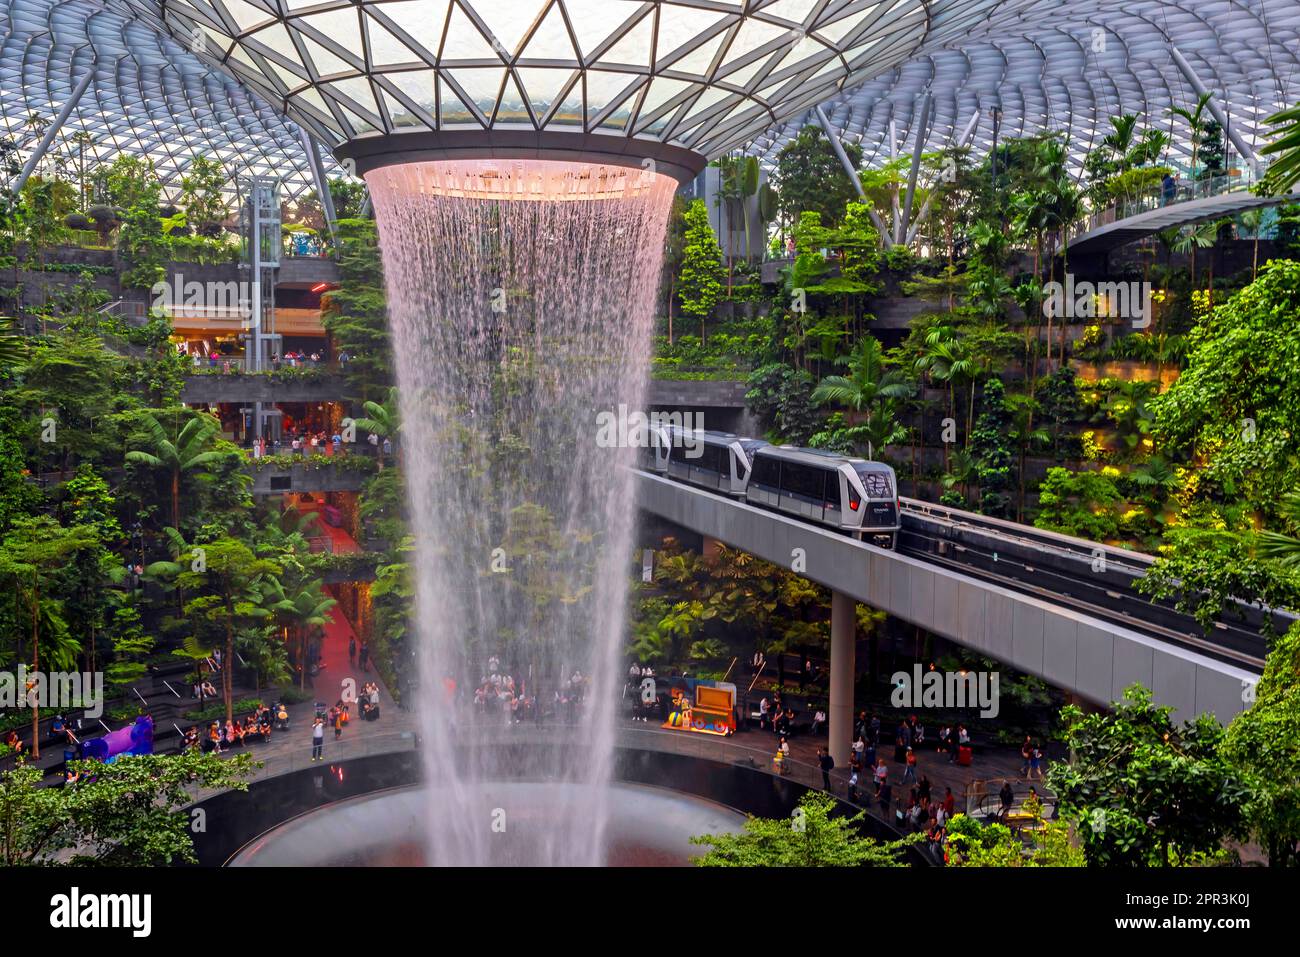 Singapur. Juwel, Wasserfall und Indoor Forest am Changi Airport Singapur. Singapur Changi wurde zum besten Flughafen der Welt gekrönt. Stockfoto